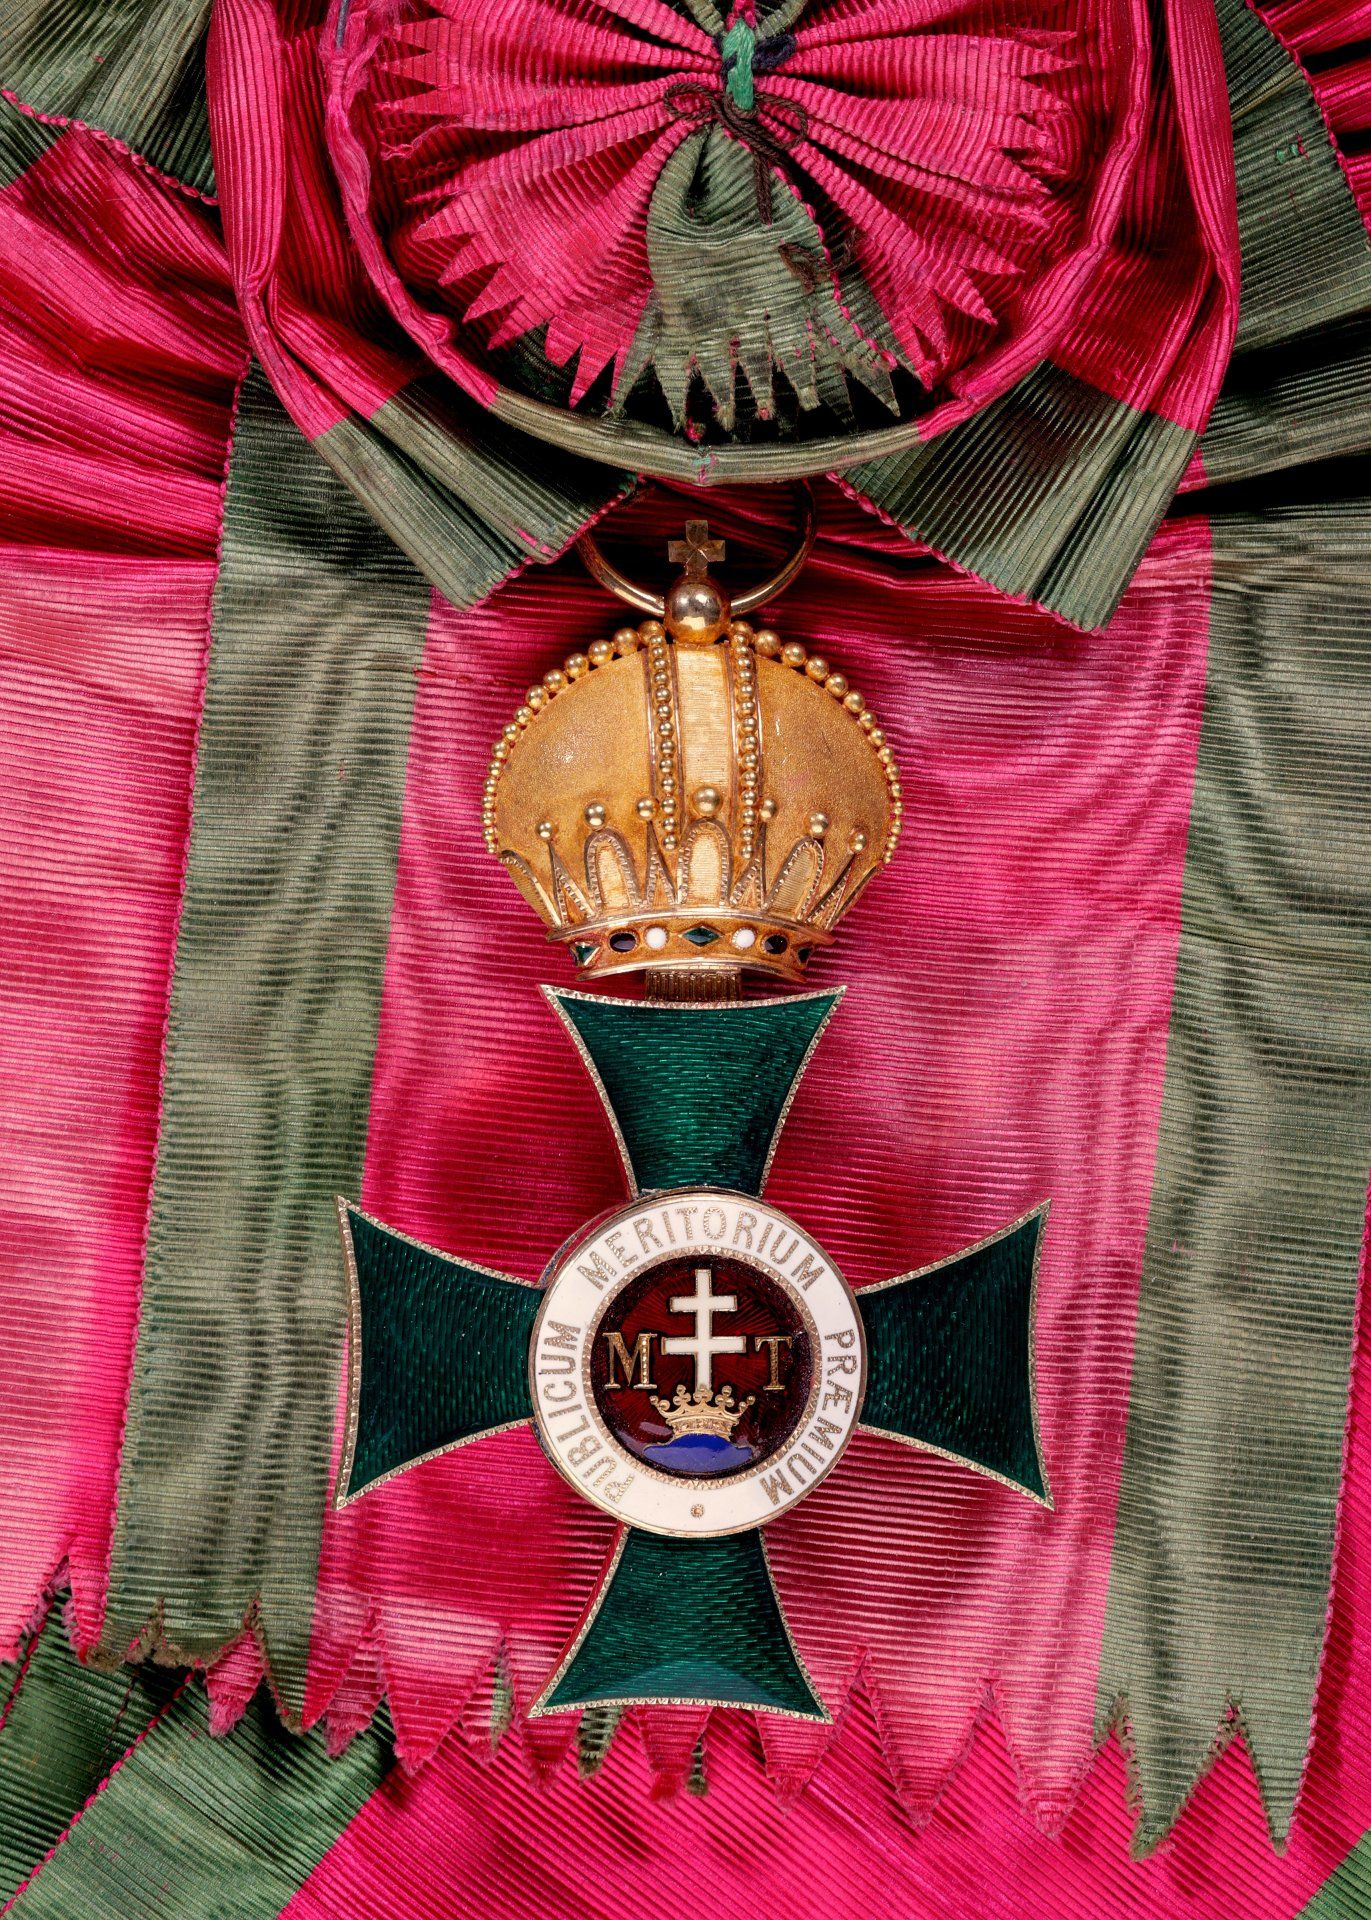 Schwarzburg Rudolstadt : Fürstlich Schwarzburgisches Ehrenkreuz: Ehrenkreuz 1. Klasse mit Krone,... - Bild 22 aus 23